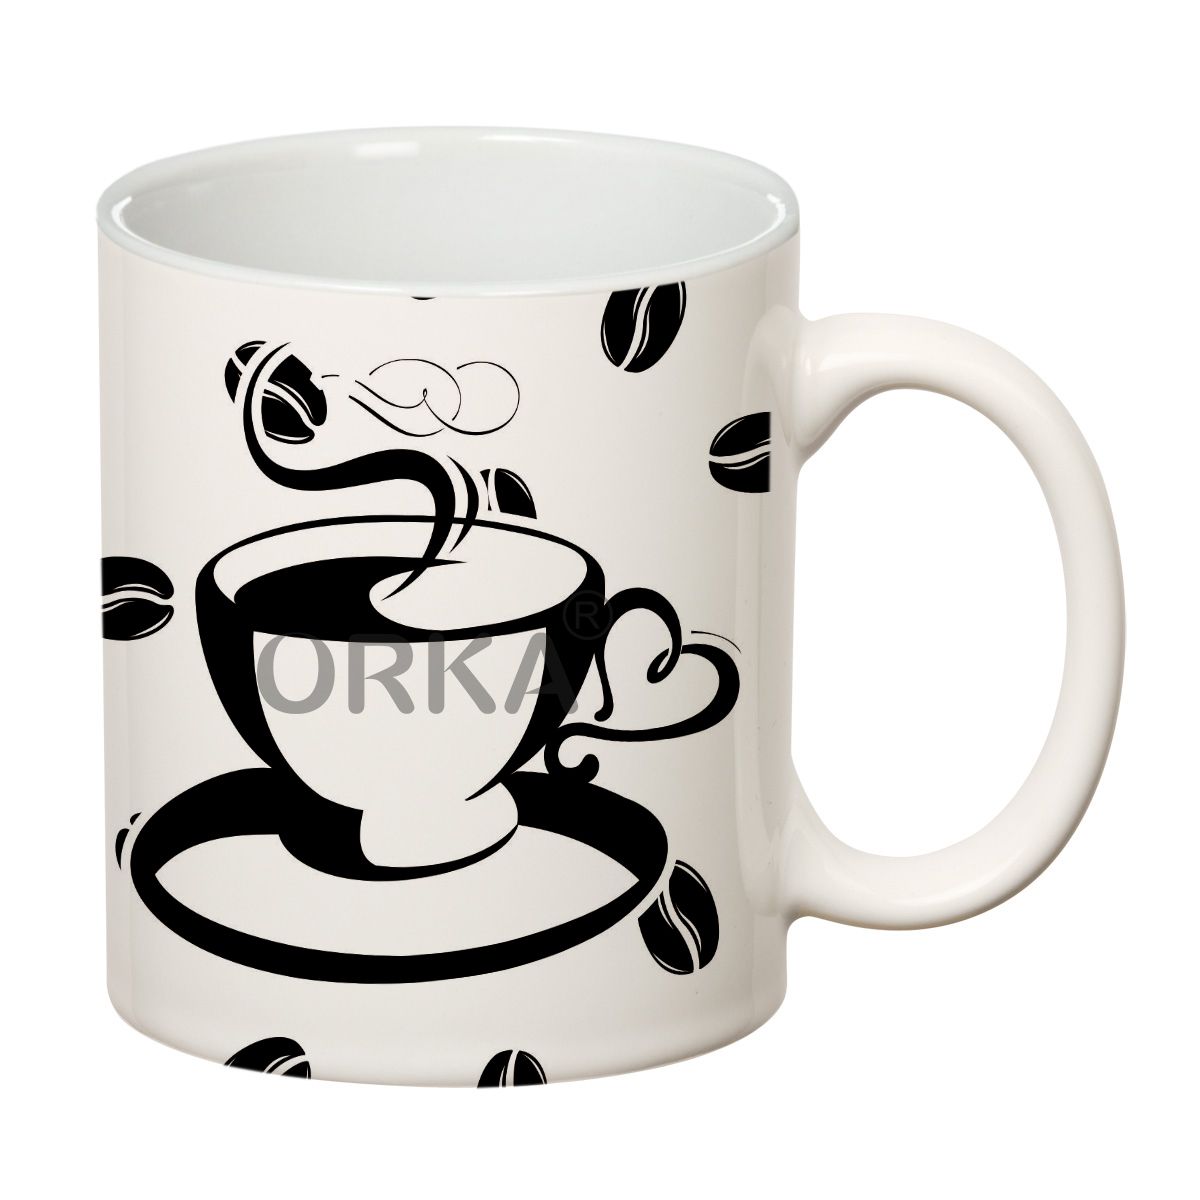 ORKA  Coffee Mug PrintedTheme 11 Oz   